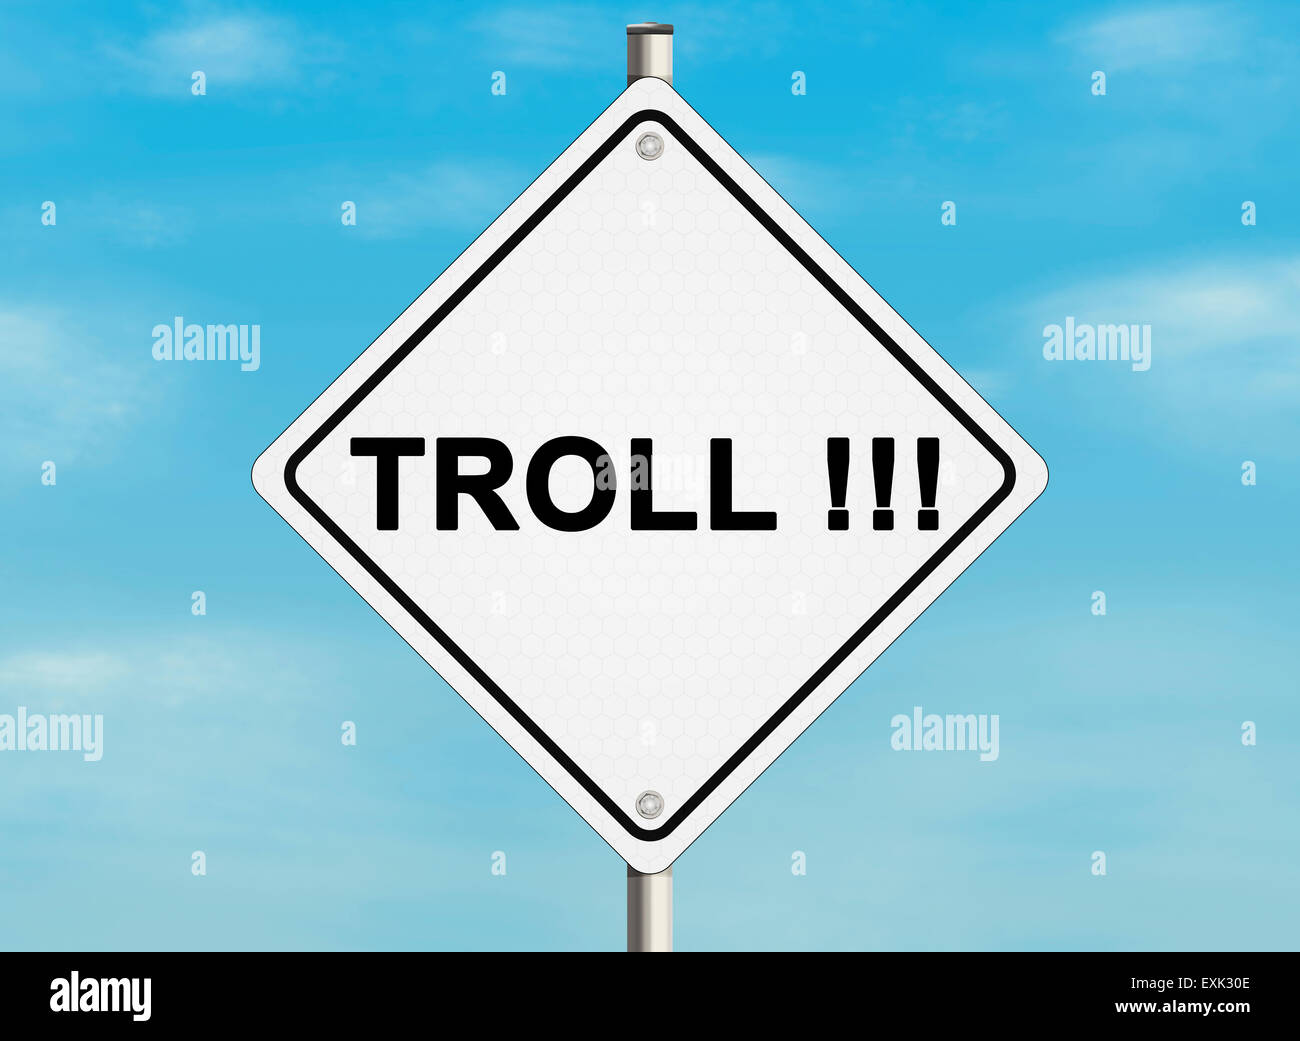 Internet-Troll-Problem. Straßenschild an der Himmelshintergrund. Raster Stockfoto